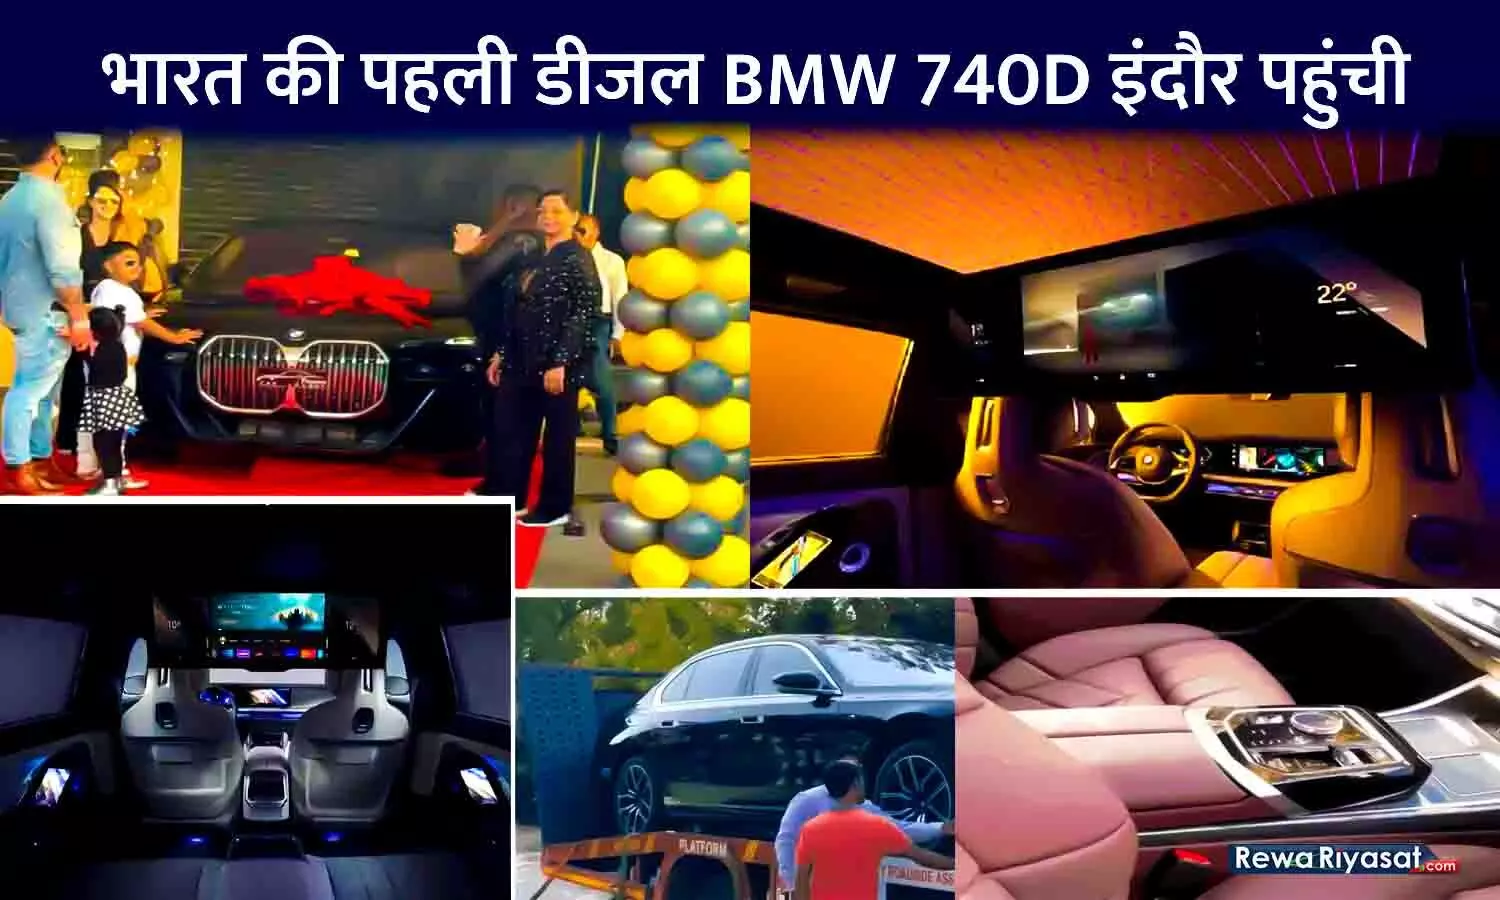 भारत की पहली डीजल BMW 740D इंदौर पहुंची: कार के फीचर्स हैरान कर देंगे, MP के ऐसे उद्योगपति जिनके पास फरारी और लैंबॉर्गिनी दोनों कारें